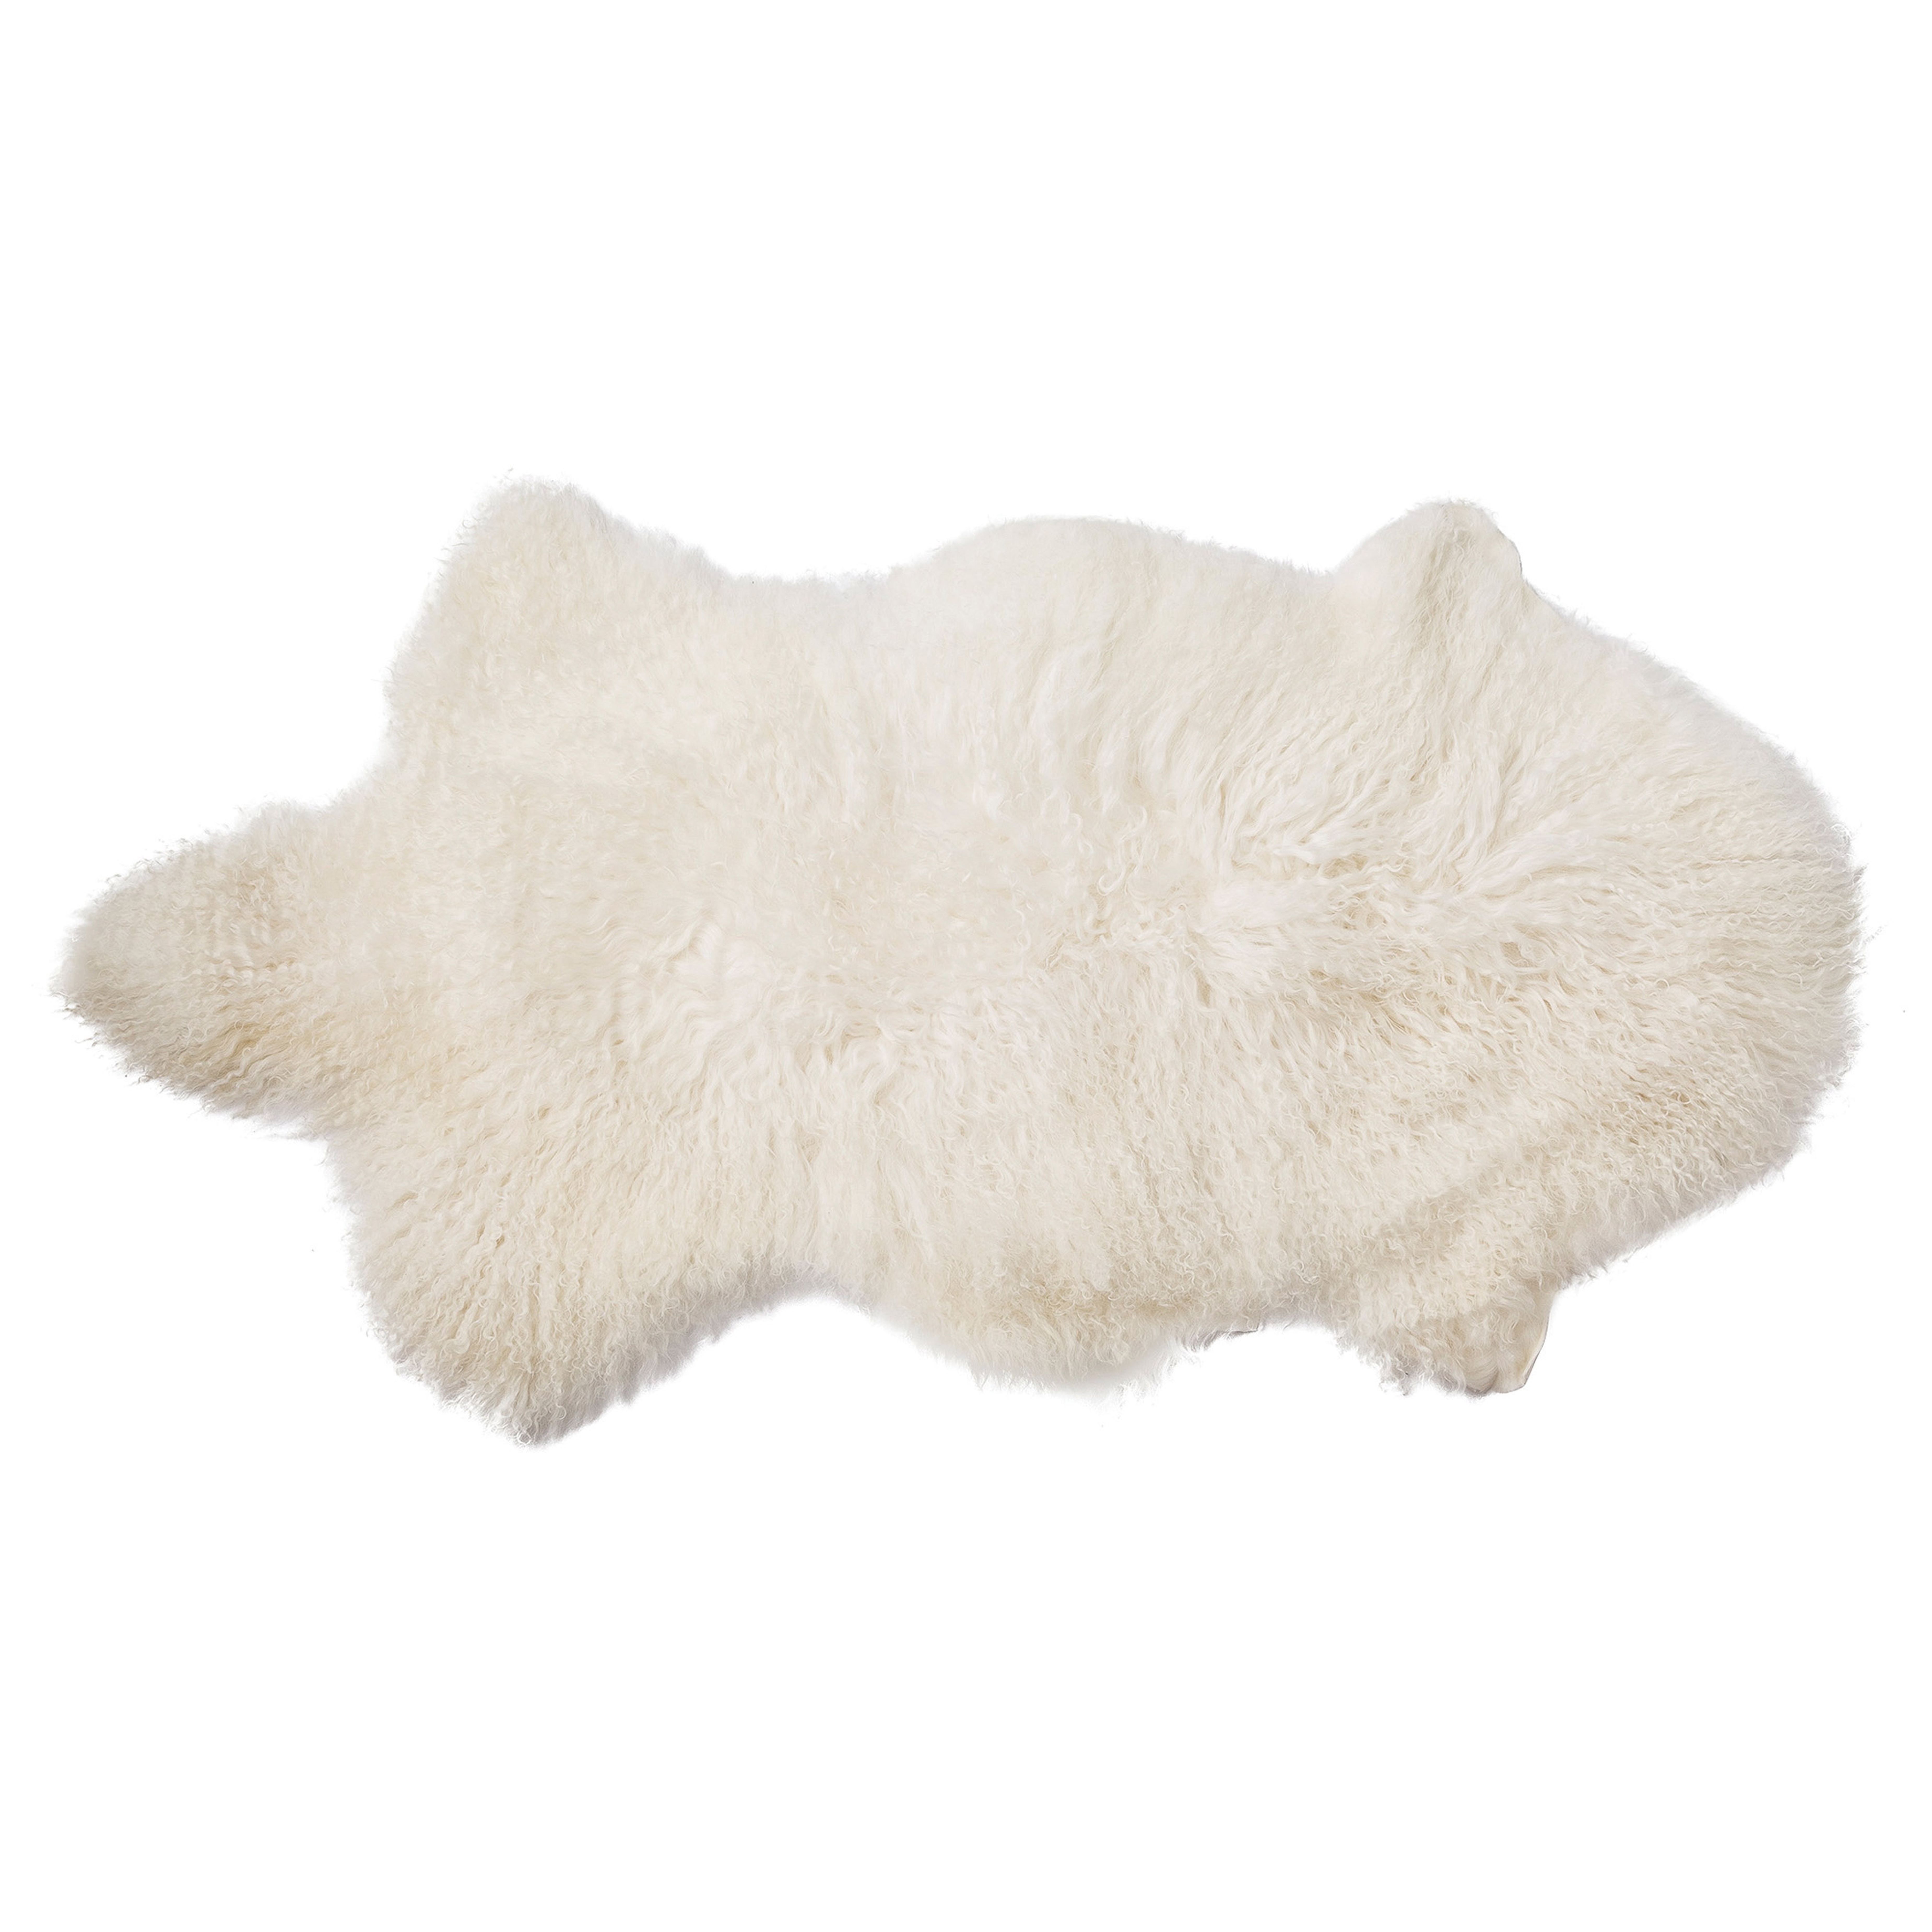 Natural Mongolian Lamb Fur Rug, 1'8" x 2'11" - Studio Marcette